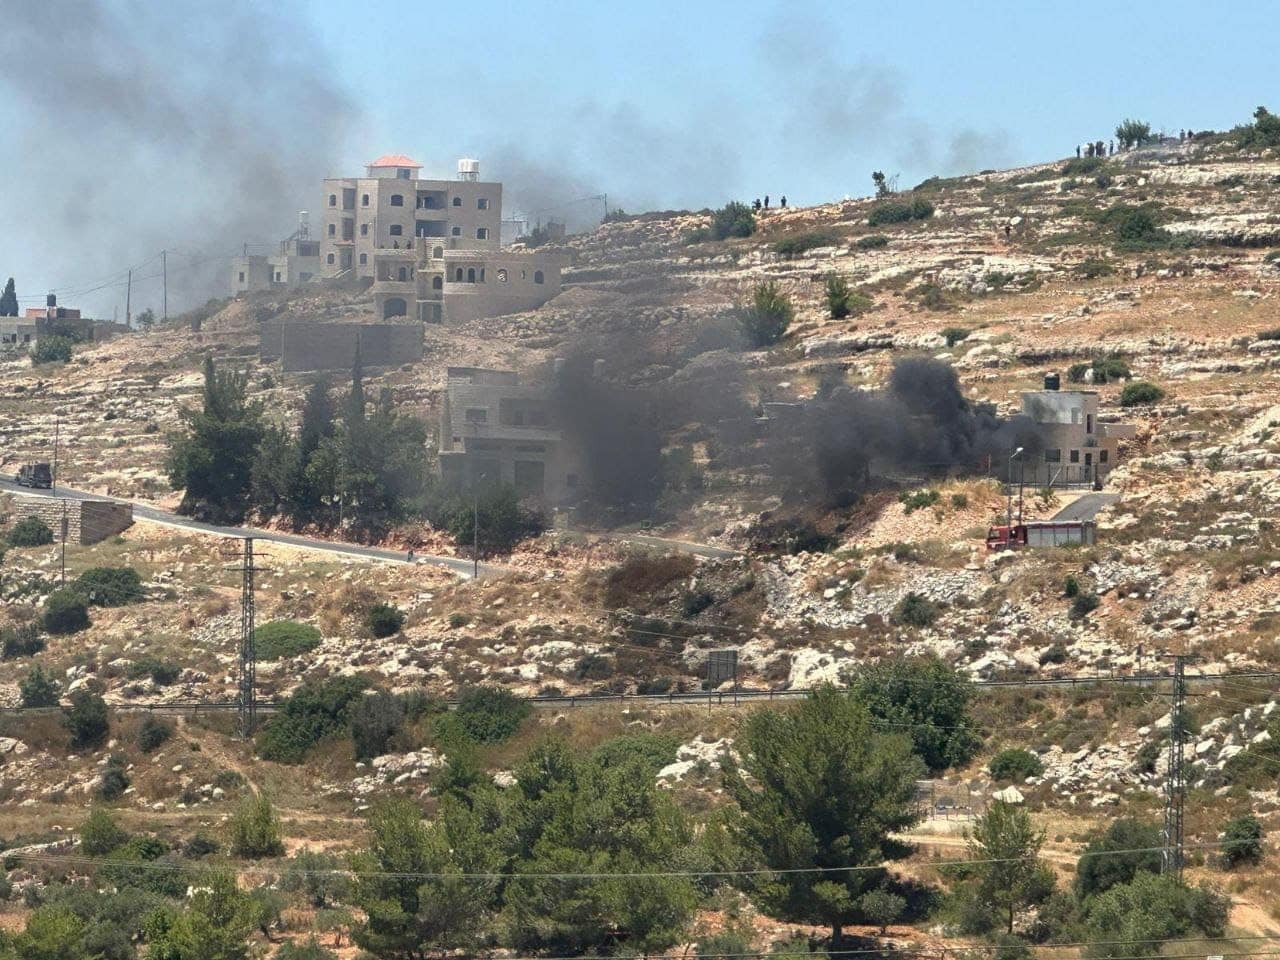 المستوطنون يهاجمون قرية أم صفا قضاء رام الله، ويطلقون الرصاص الحي صوب طاقم تلفزيون فلسطين أثناء تغطيته للأحداث/ فيديو